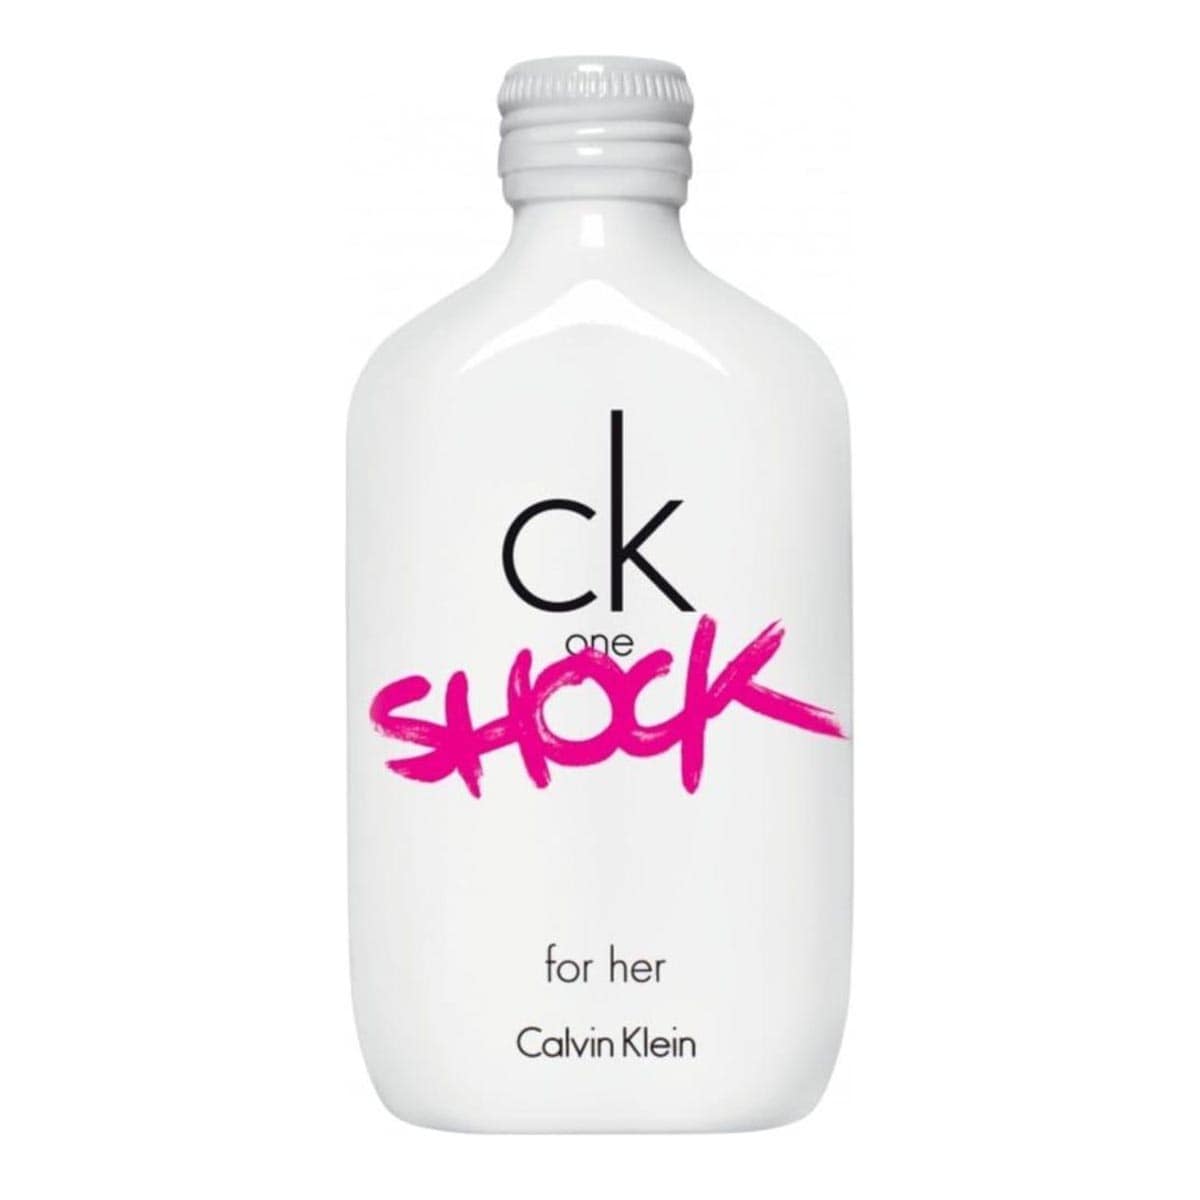 CK One Shock For Her Calvin Klein Edt Perfume For Women 100ml - Allurebeautypk